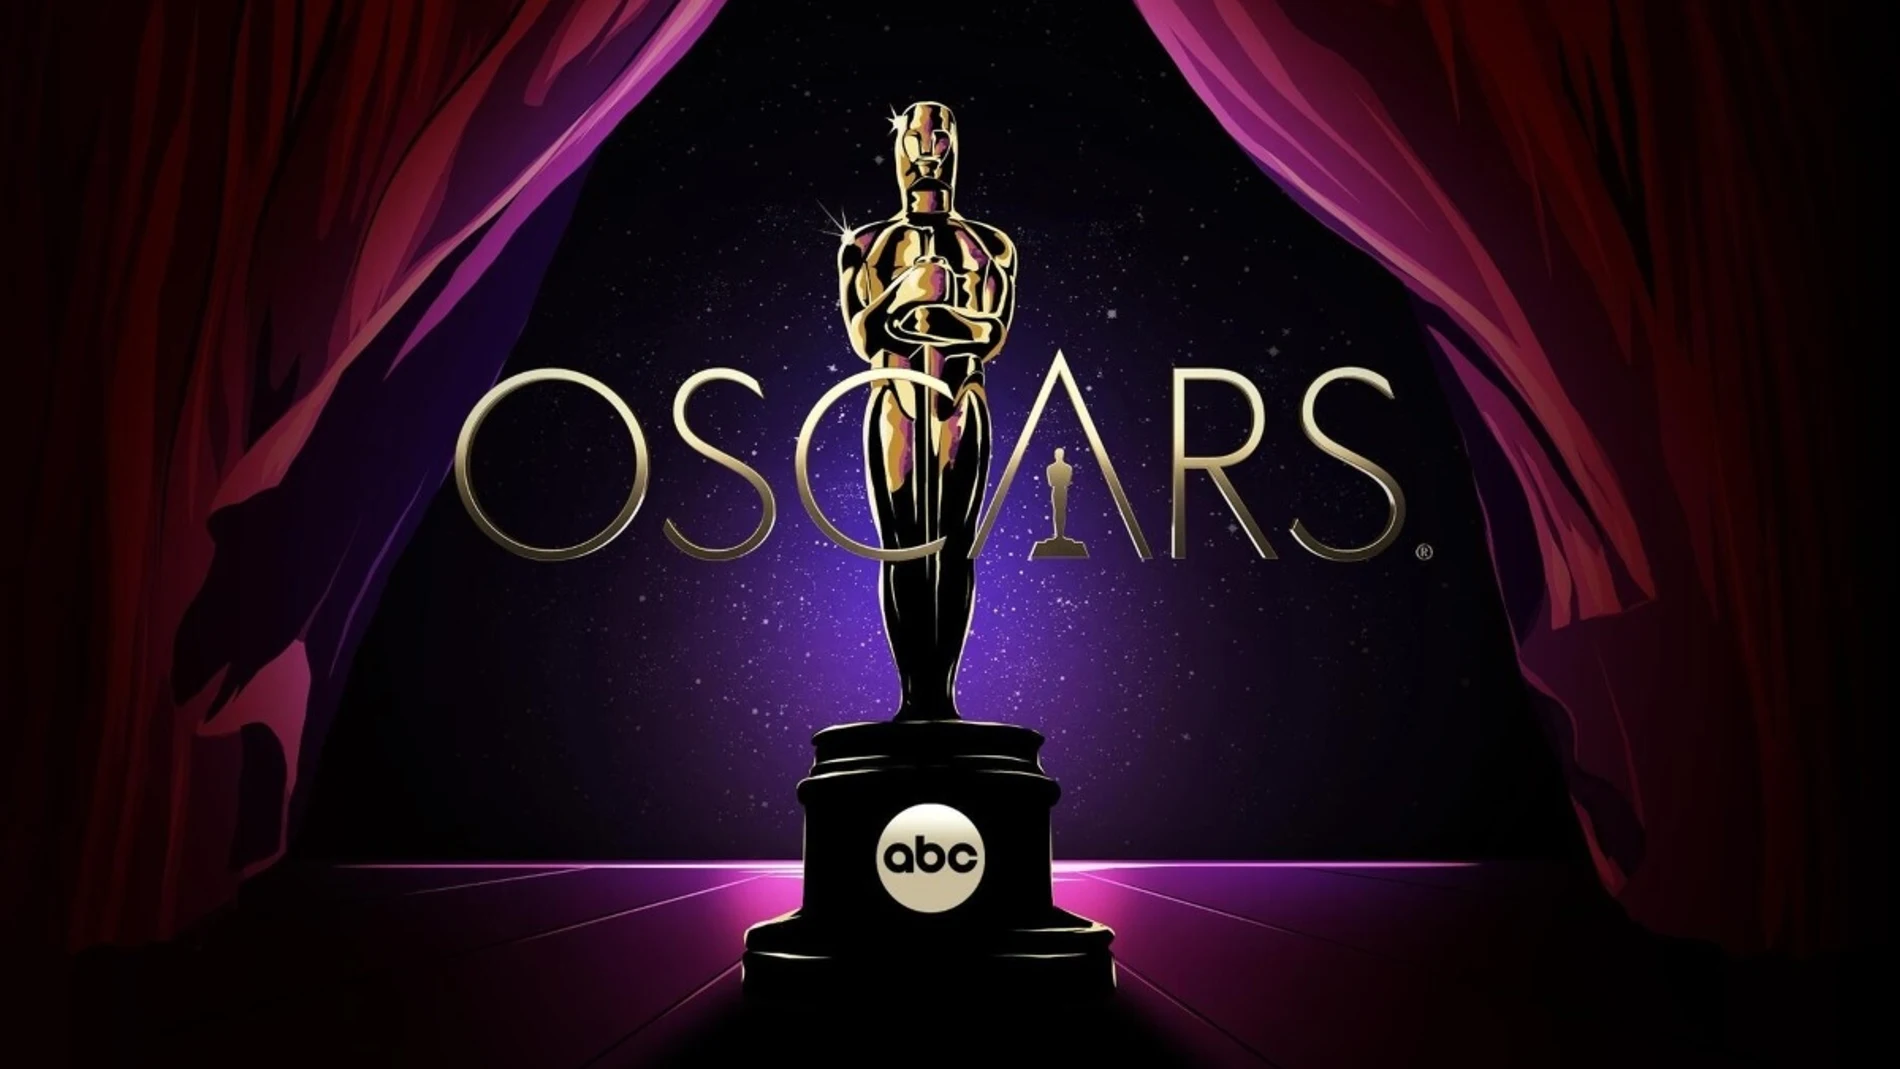 La entrega de ocho premios de los Oscar 2022 no se emitirá en directo